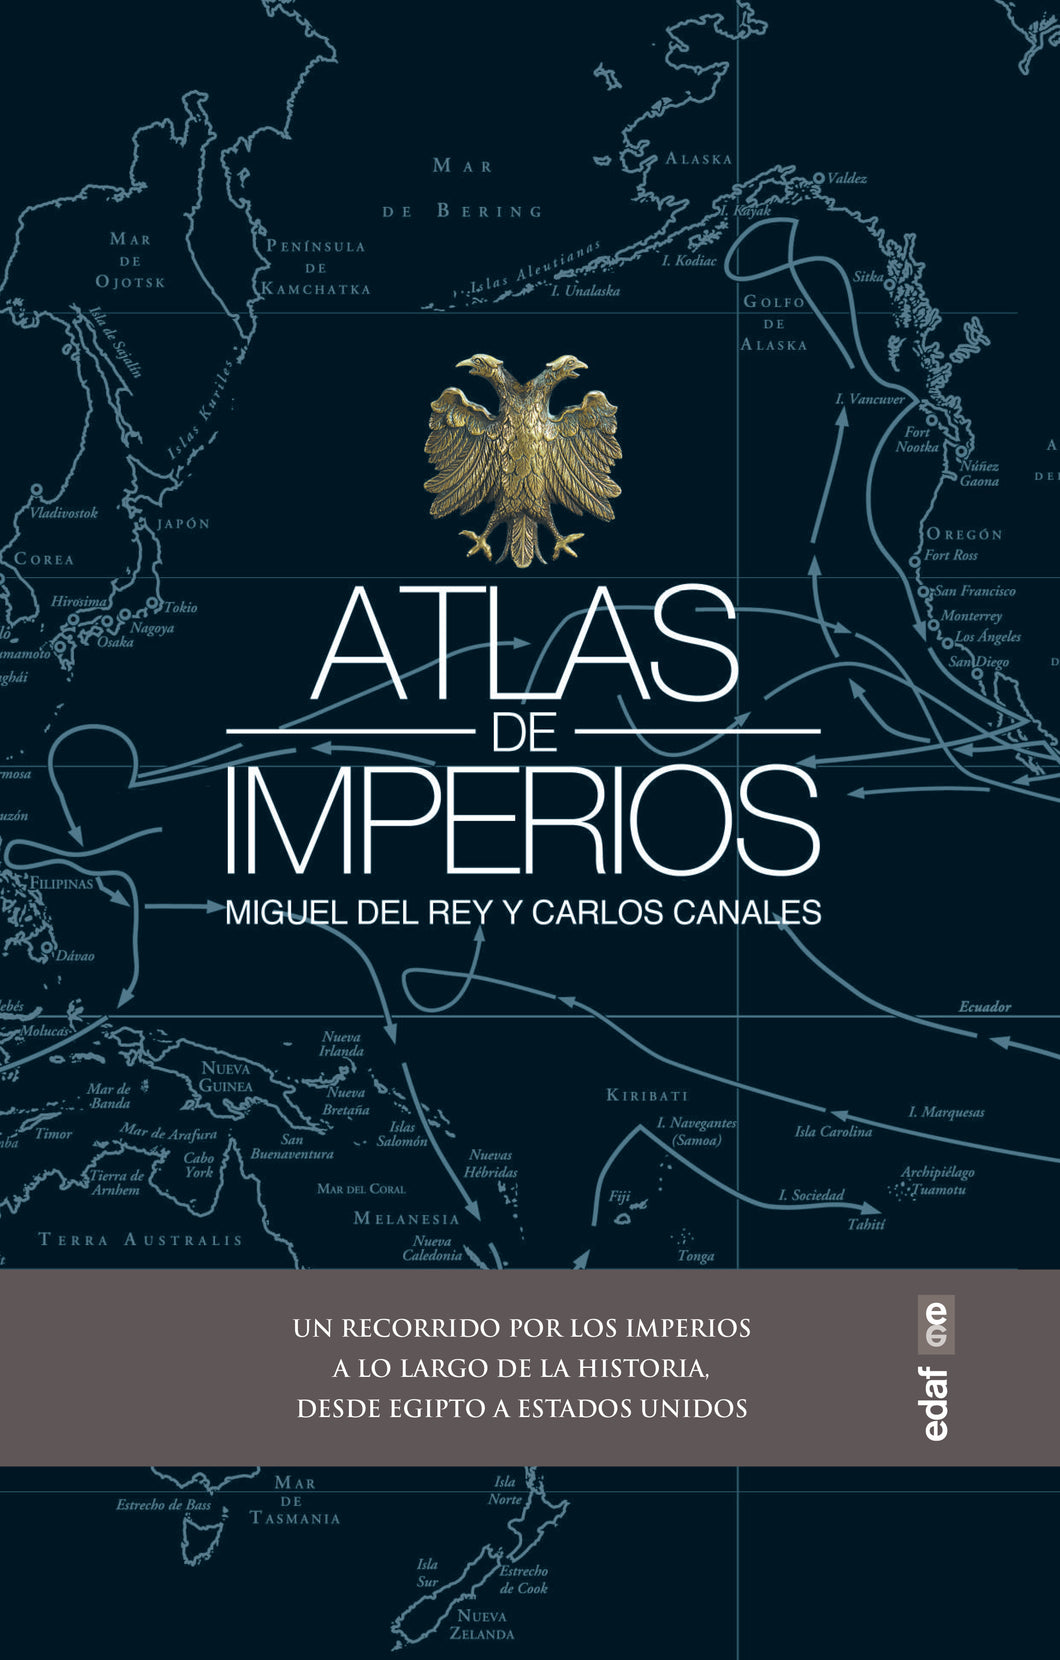 ATLAS DE IMPERIOS - Miguel Del Rey y Carlos Canales